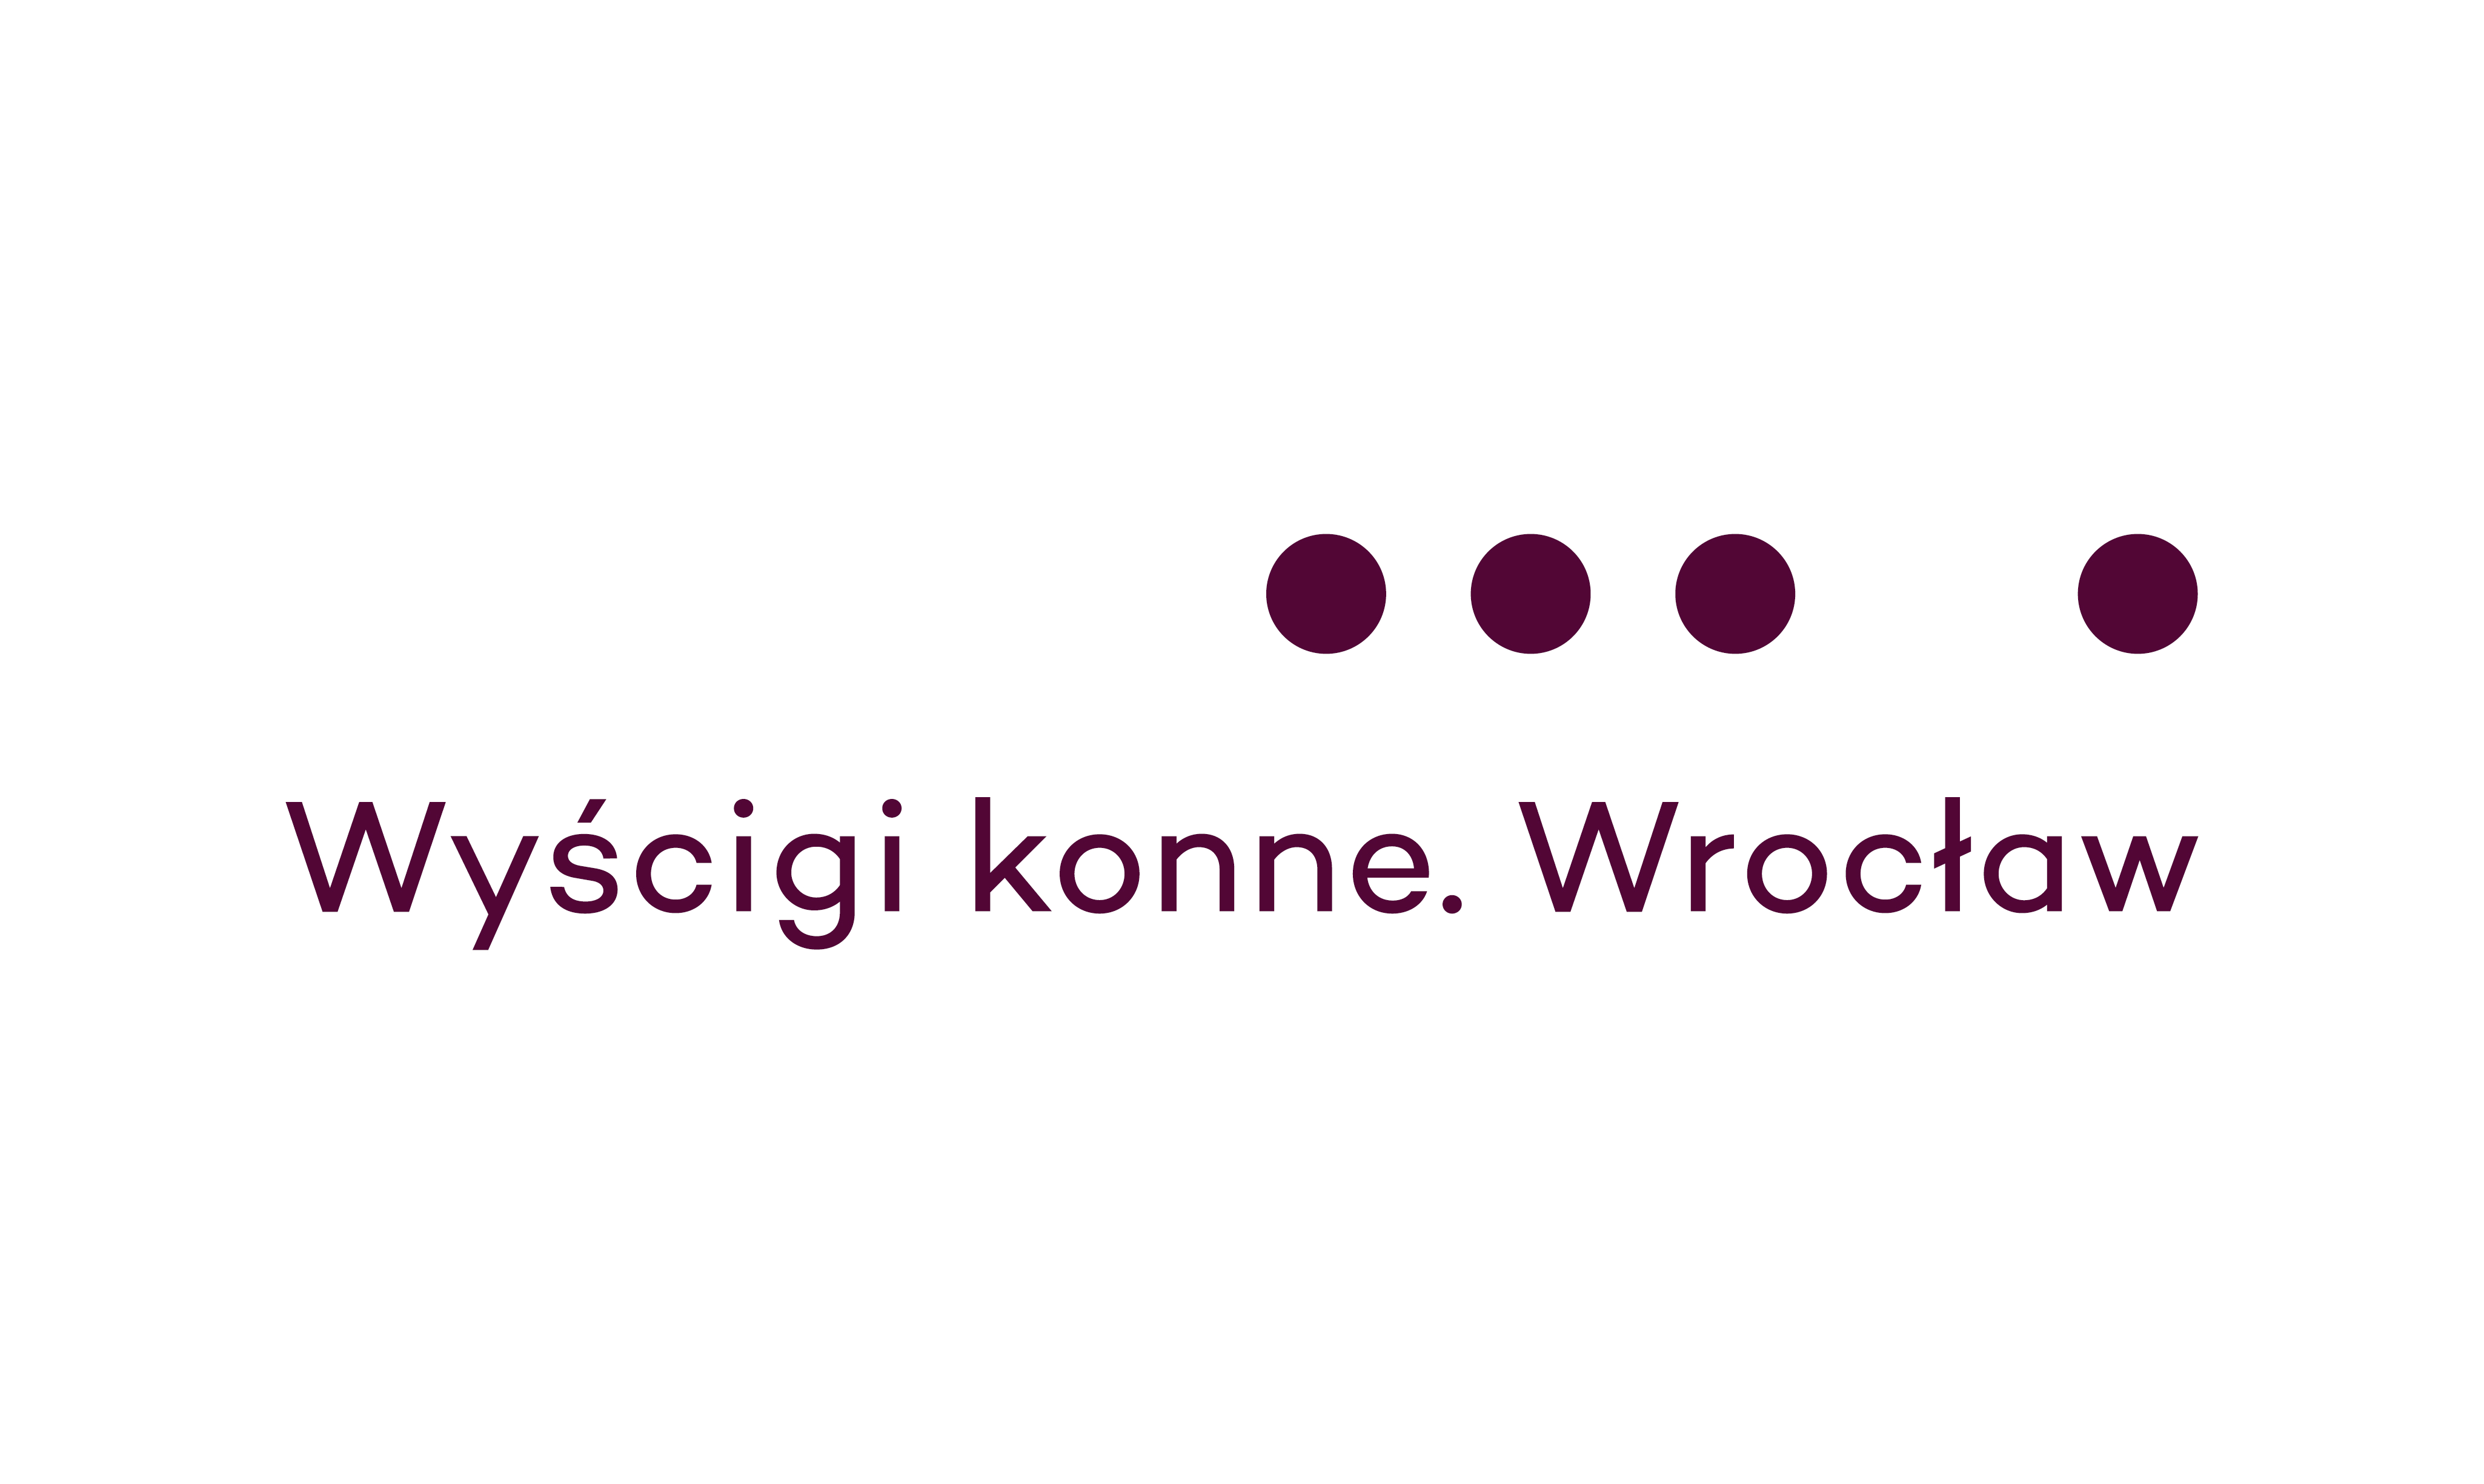 img: Ustalenia w sprawie wypadku podczas Wielkiej Wrocławskiej